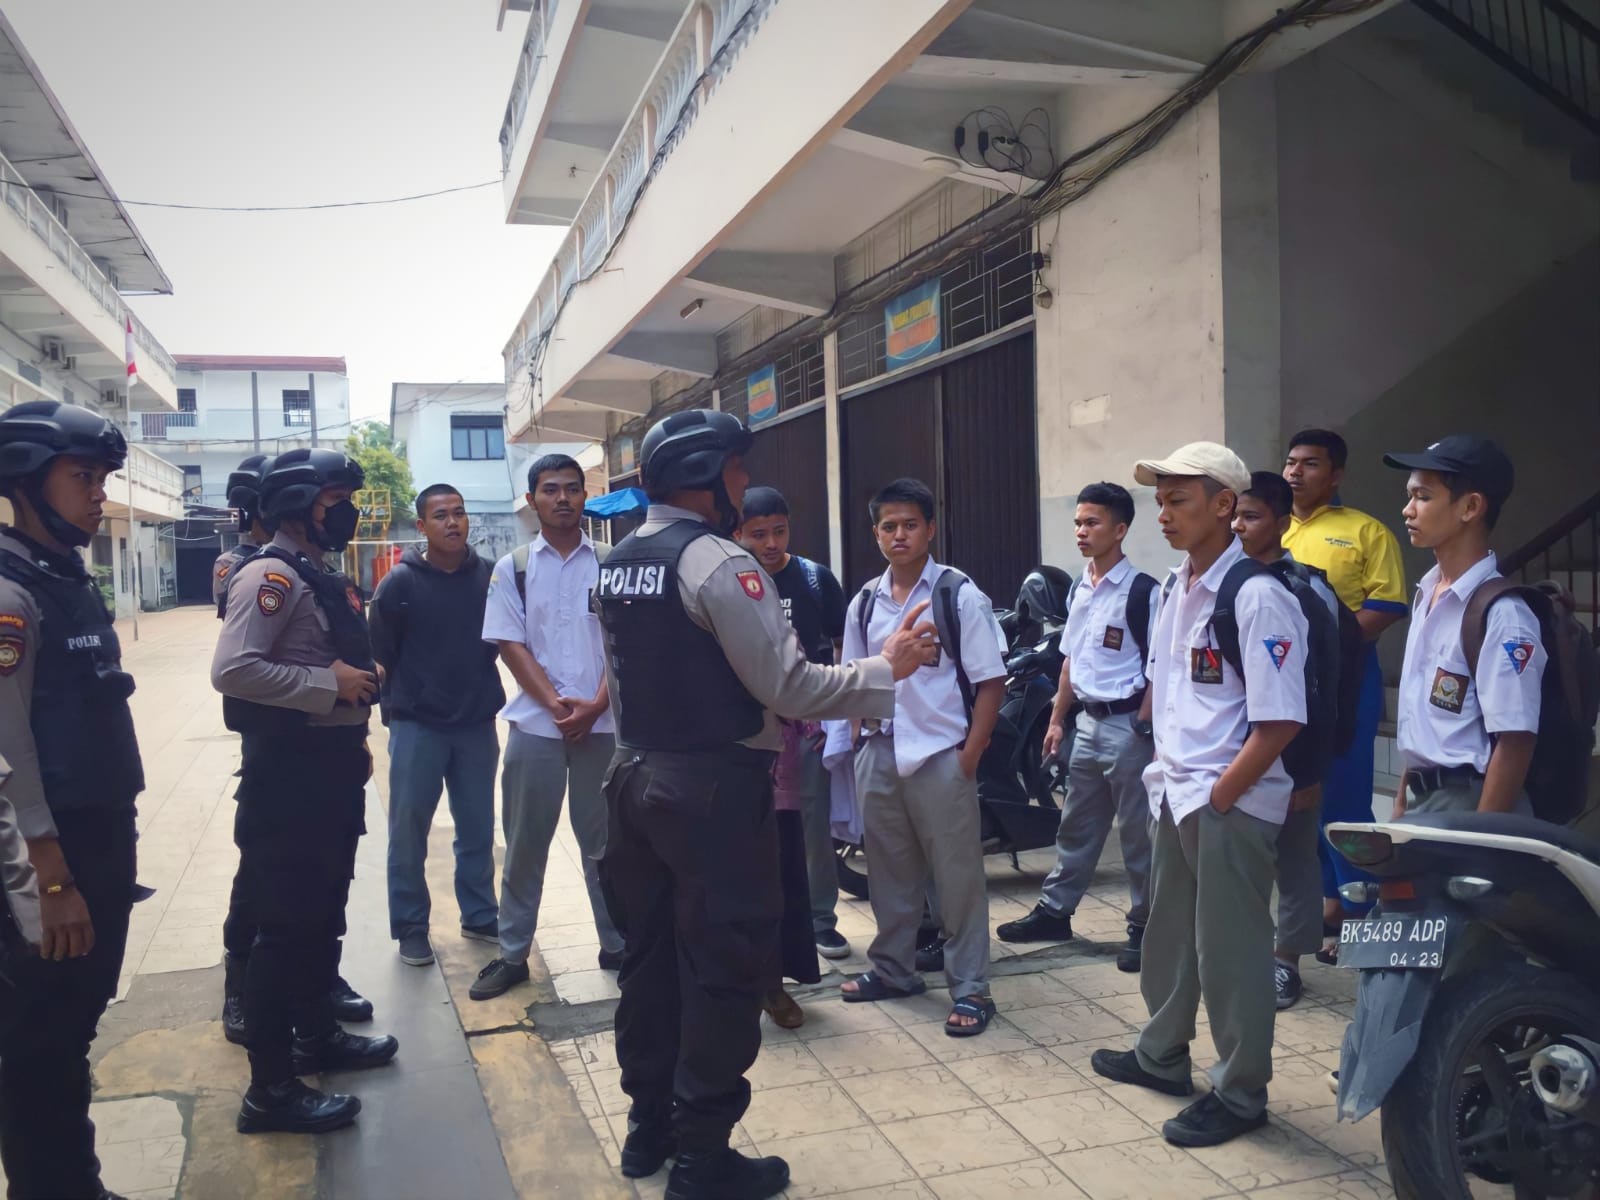 Dukung Program Kapolri, Anggota Samapta Polrestabes Medan Lakukan Patroli Skala Besar Antisipasi Tawuran Pelajar